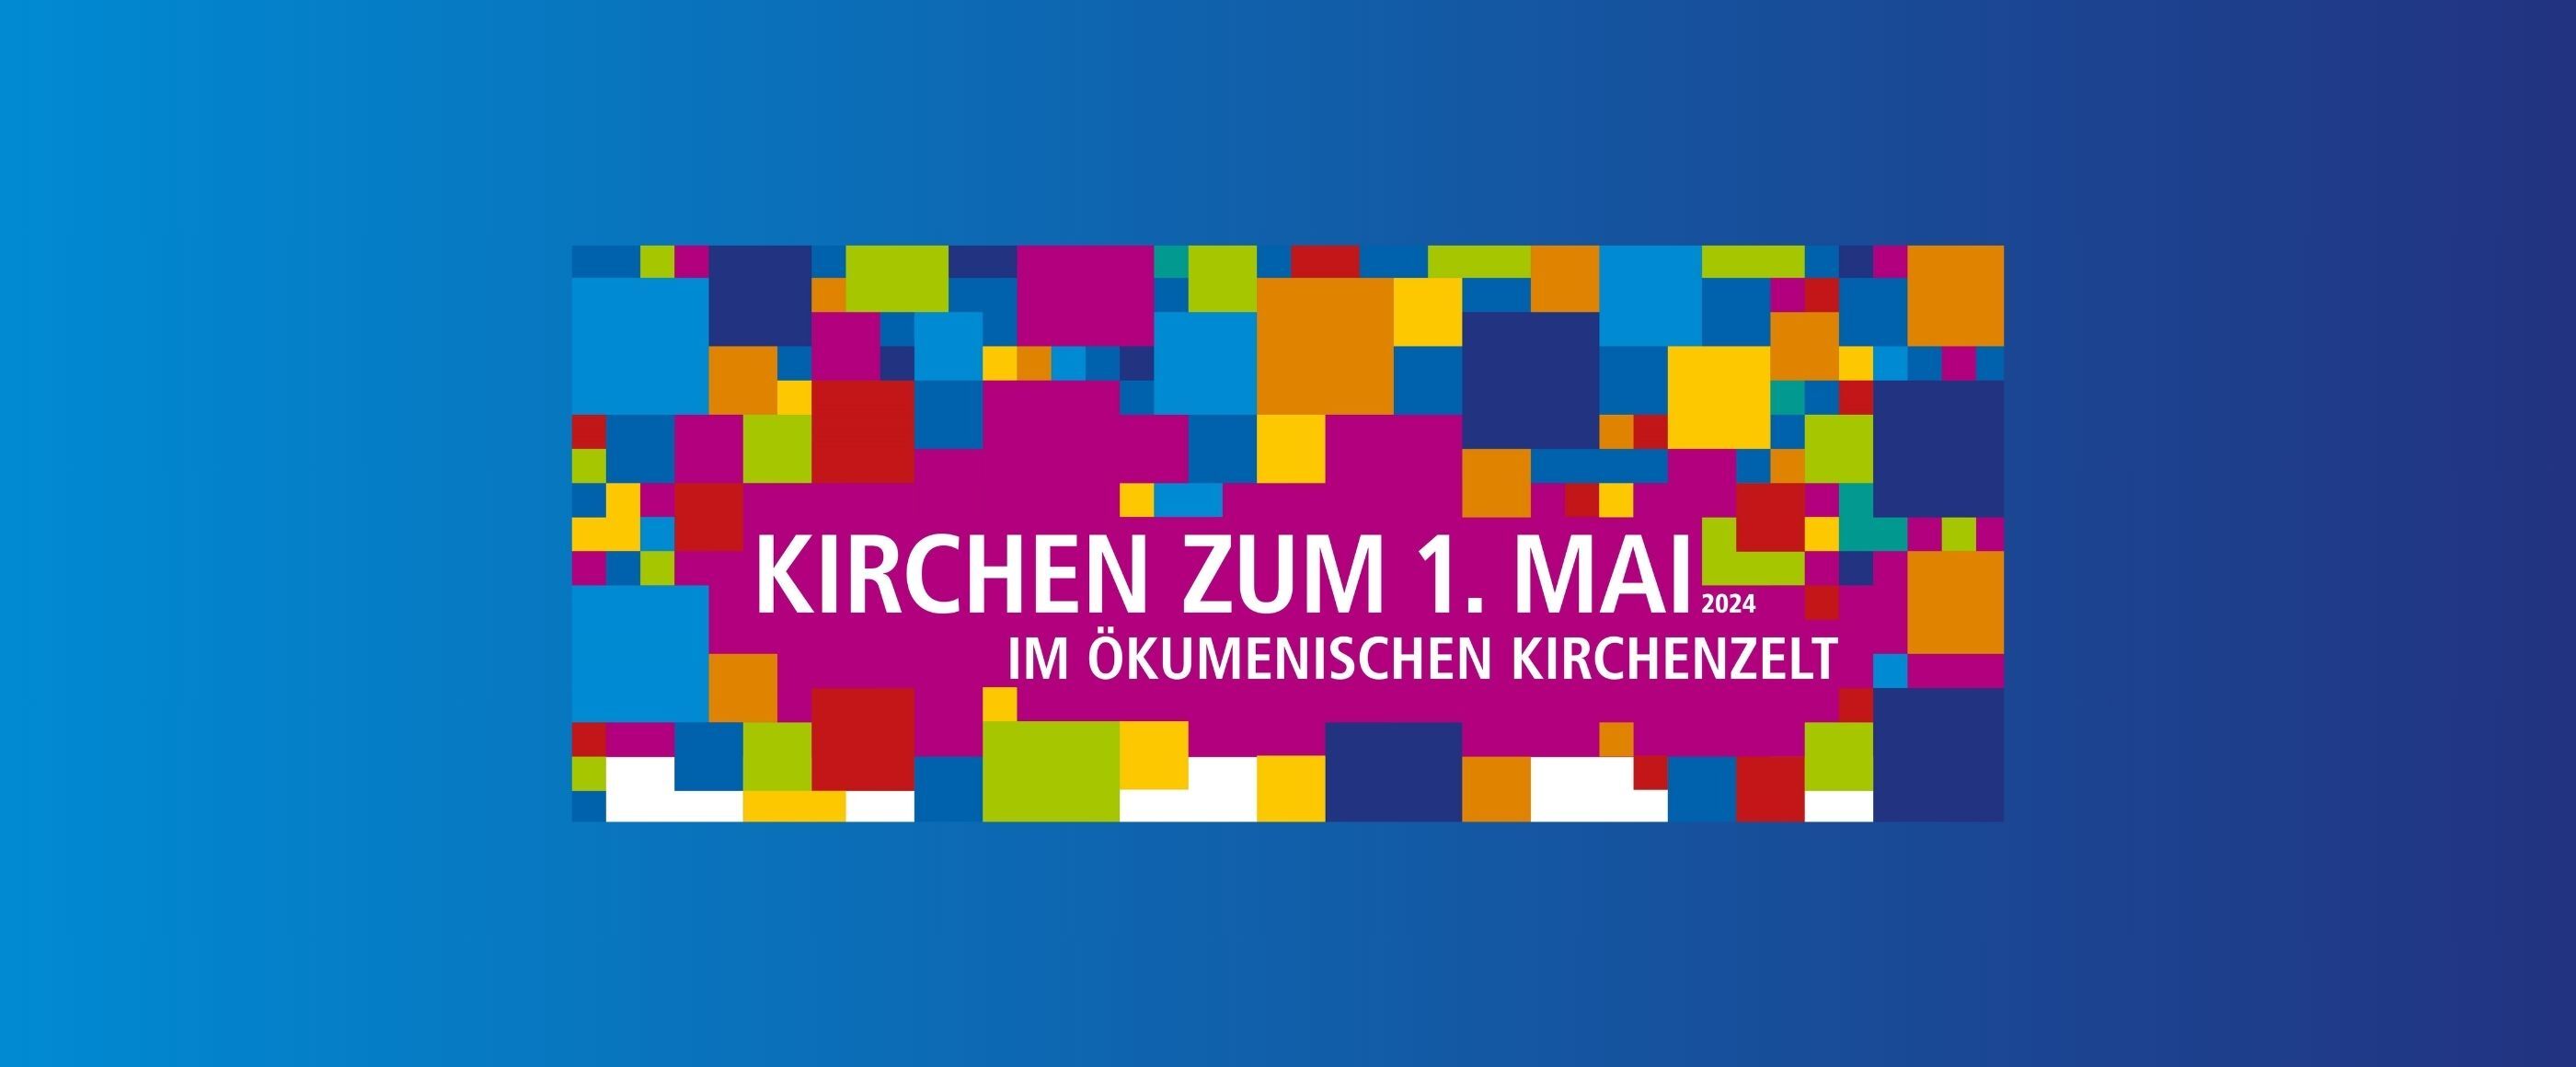 Auf blauem Hintergrund stehen viele bunte Quadrate um die Worte "Kirche zum 1. Mai"